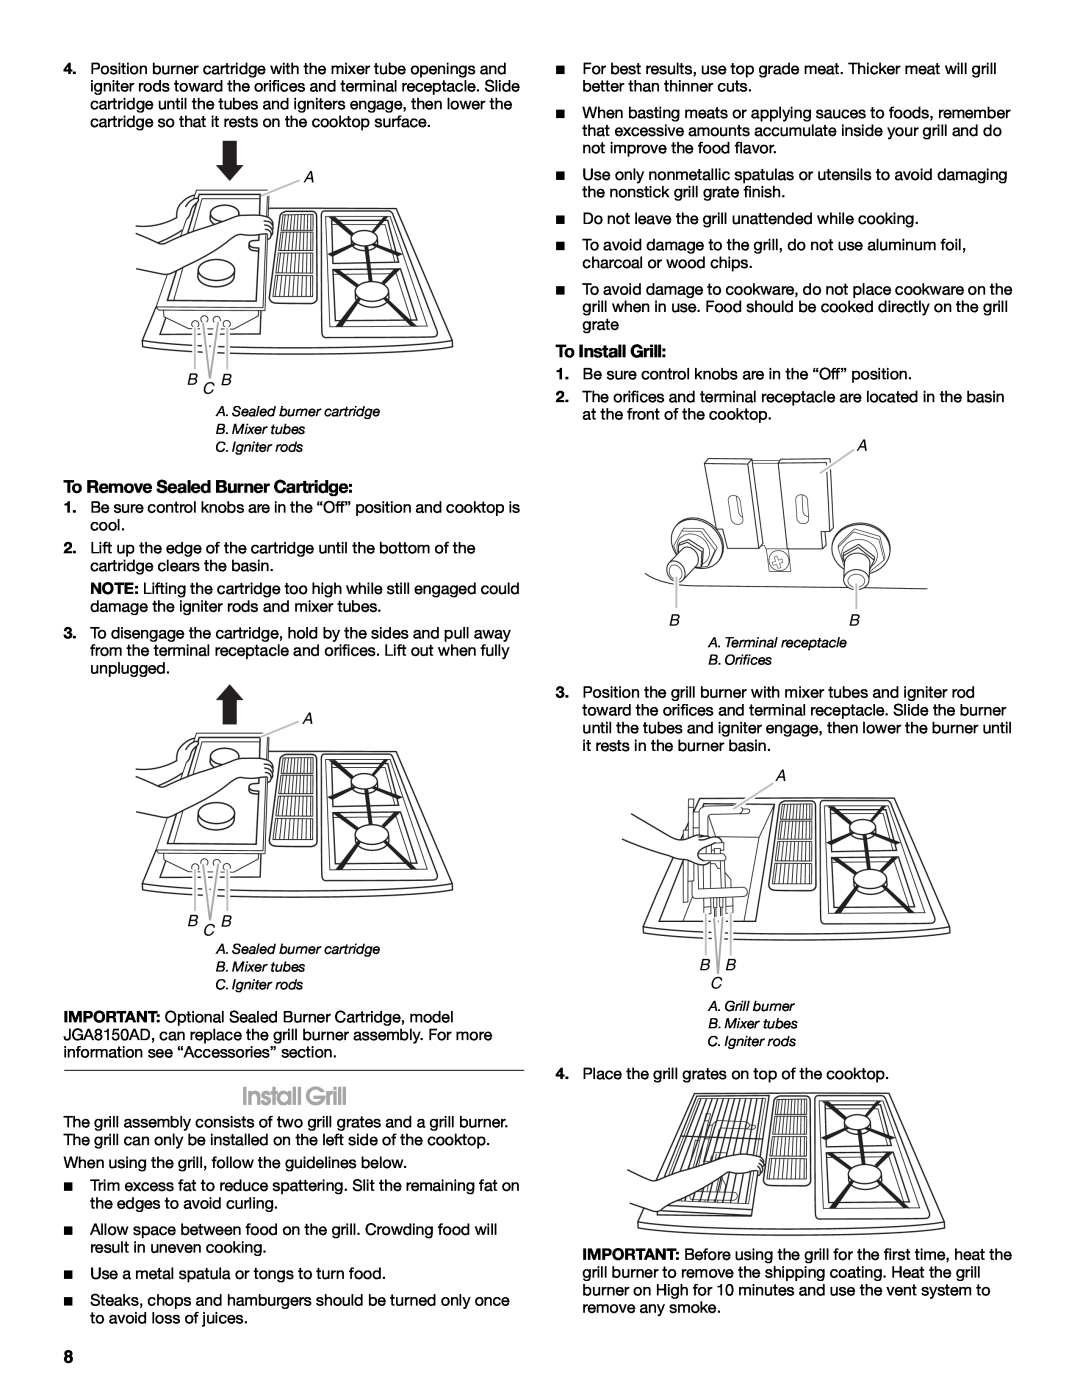 Jenn-Air JDS9865 manual To Remove Sealed Burner Cartridge, To Install Grill, A B C B, A Bb, A B B 